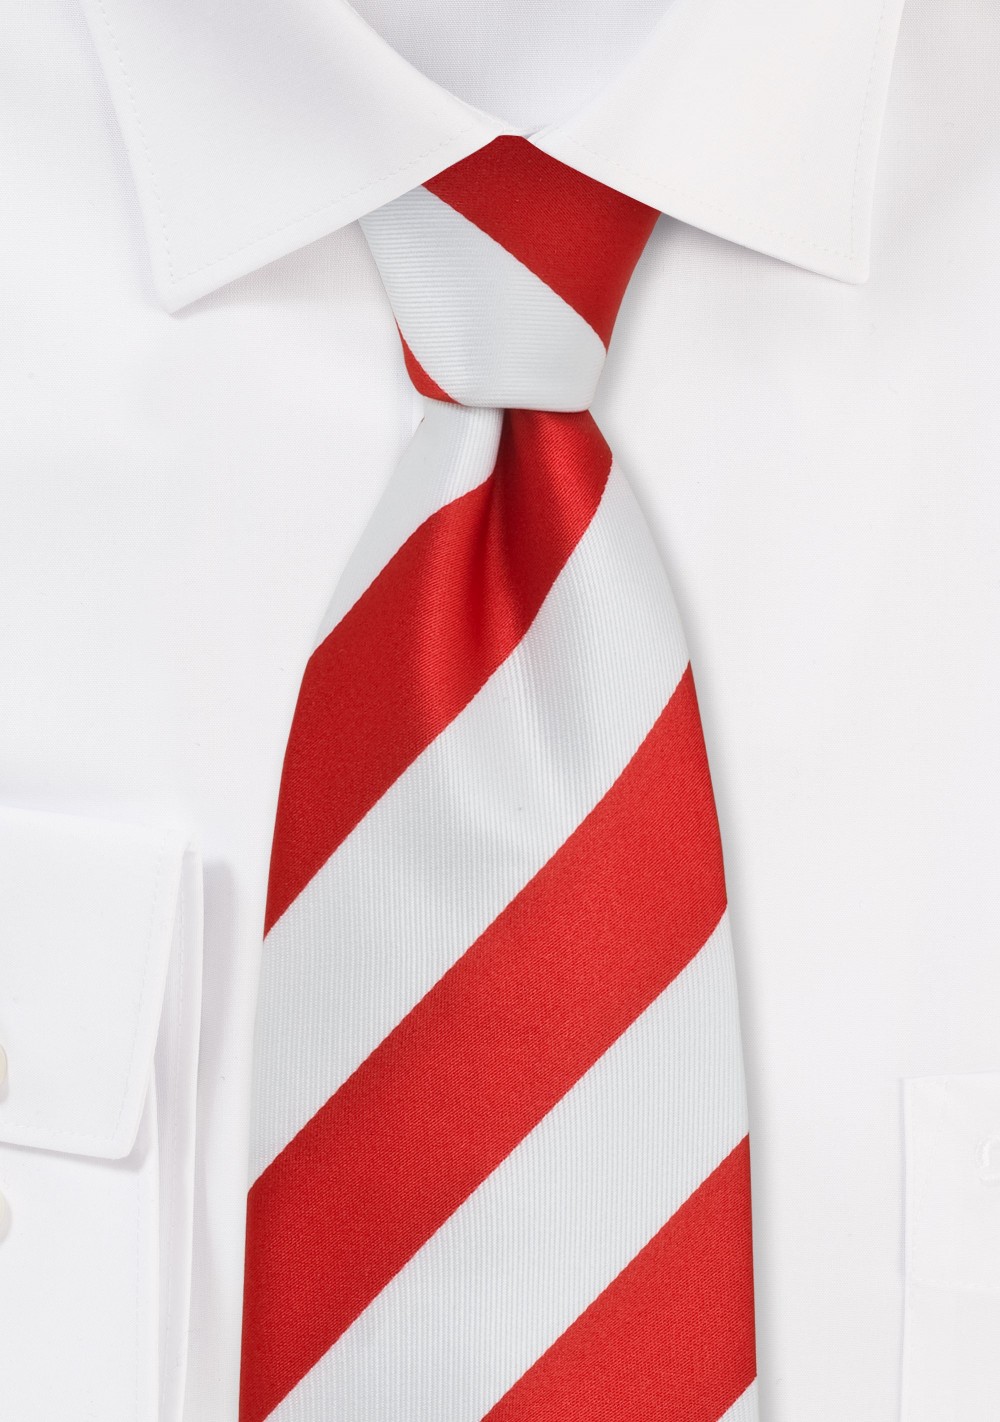 Candy Cane Striped Necktie